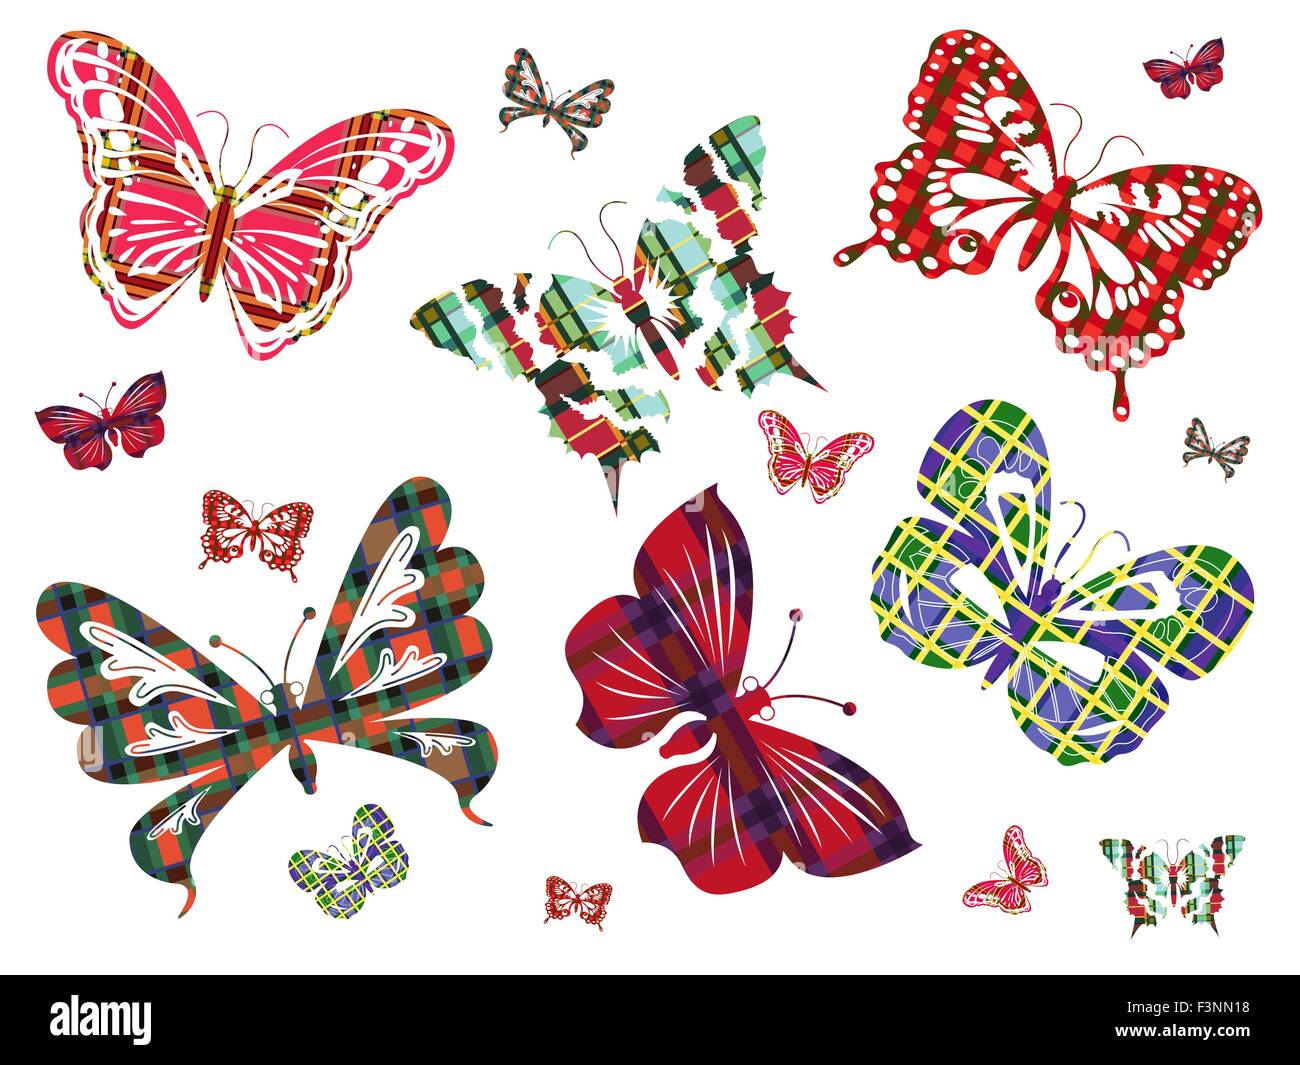 Six grands papillons aux ornements celtiques et plusieurs de leurs plus petites versions sur un fond blanc. Dessin à la main Illustration de Vecteur